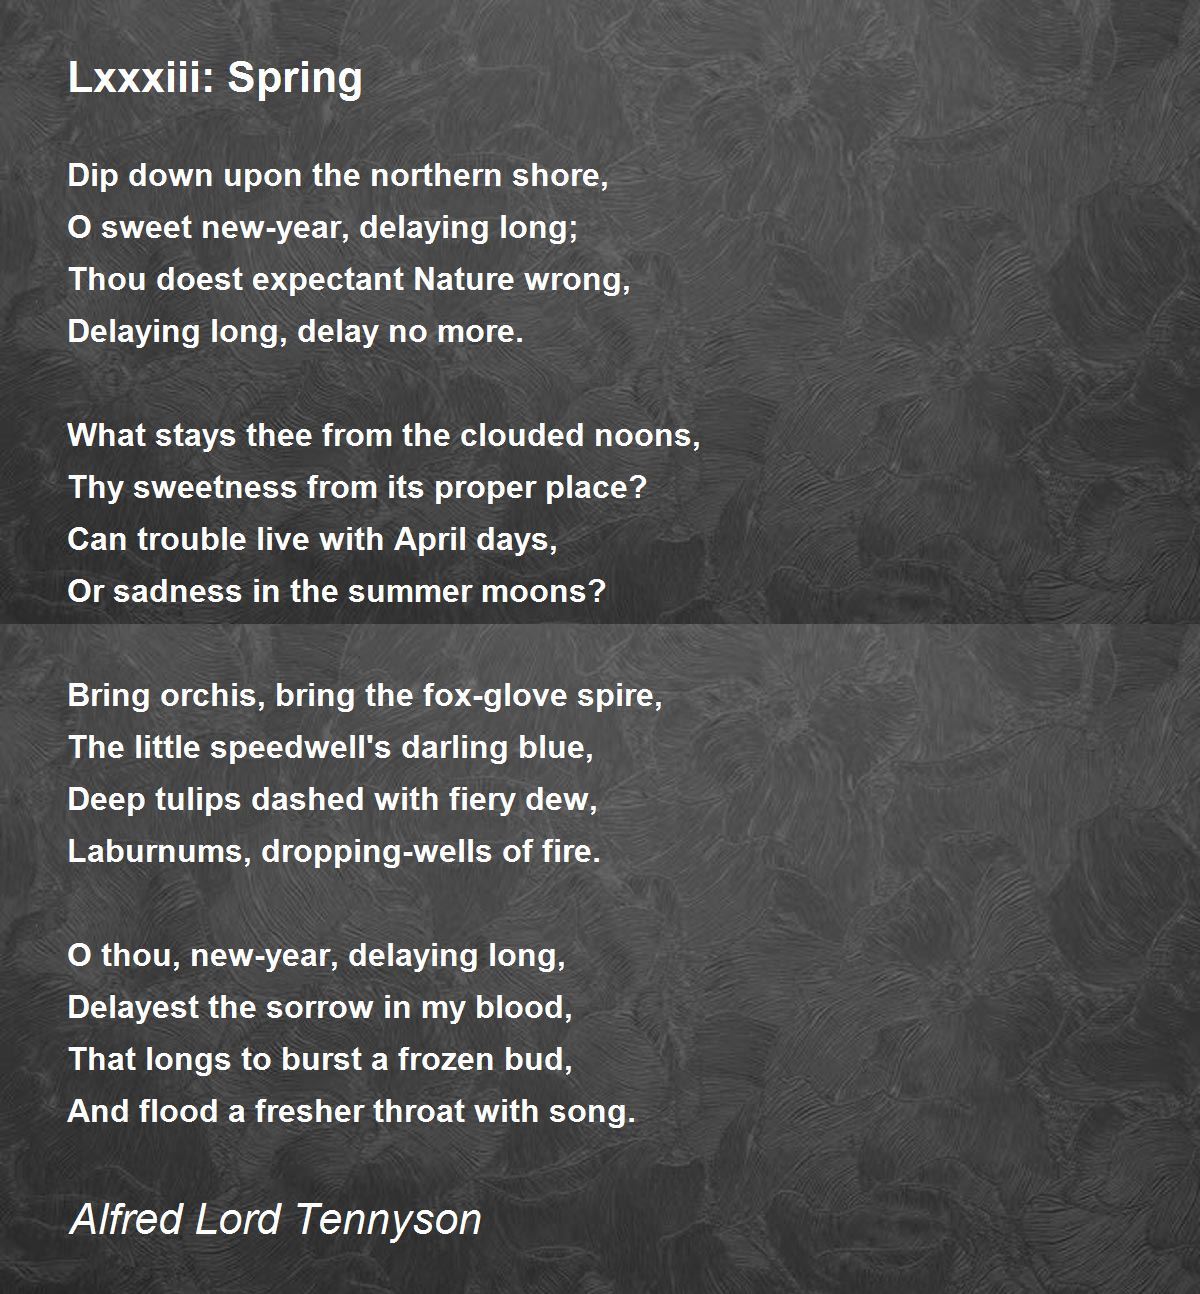 Lxxxiii: Spring by Alfred Lord Tennyson - Lxxxiii: Spring Poem